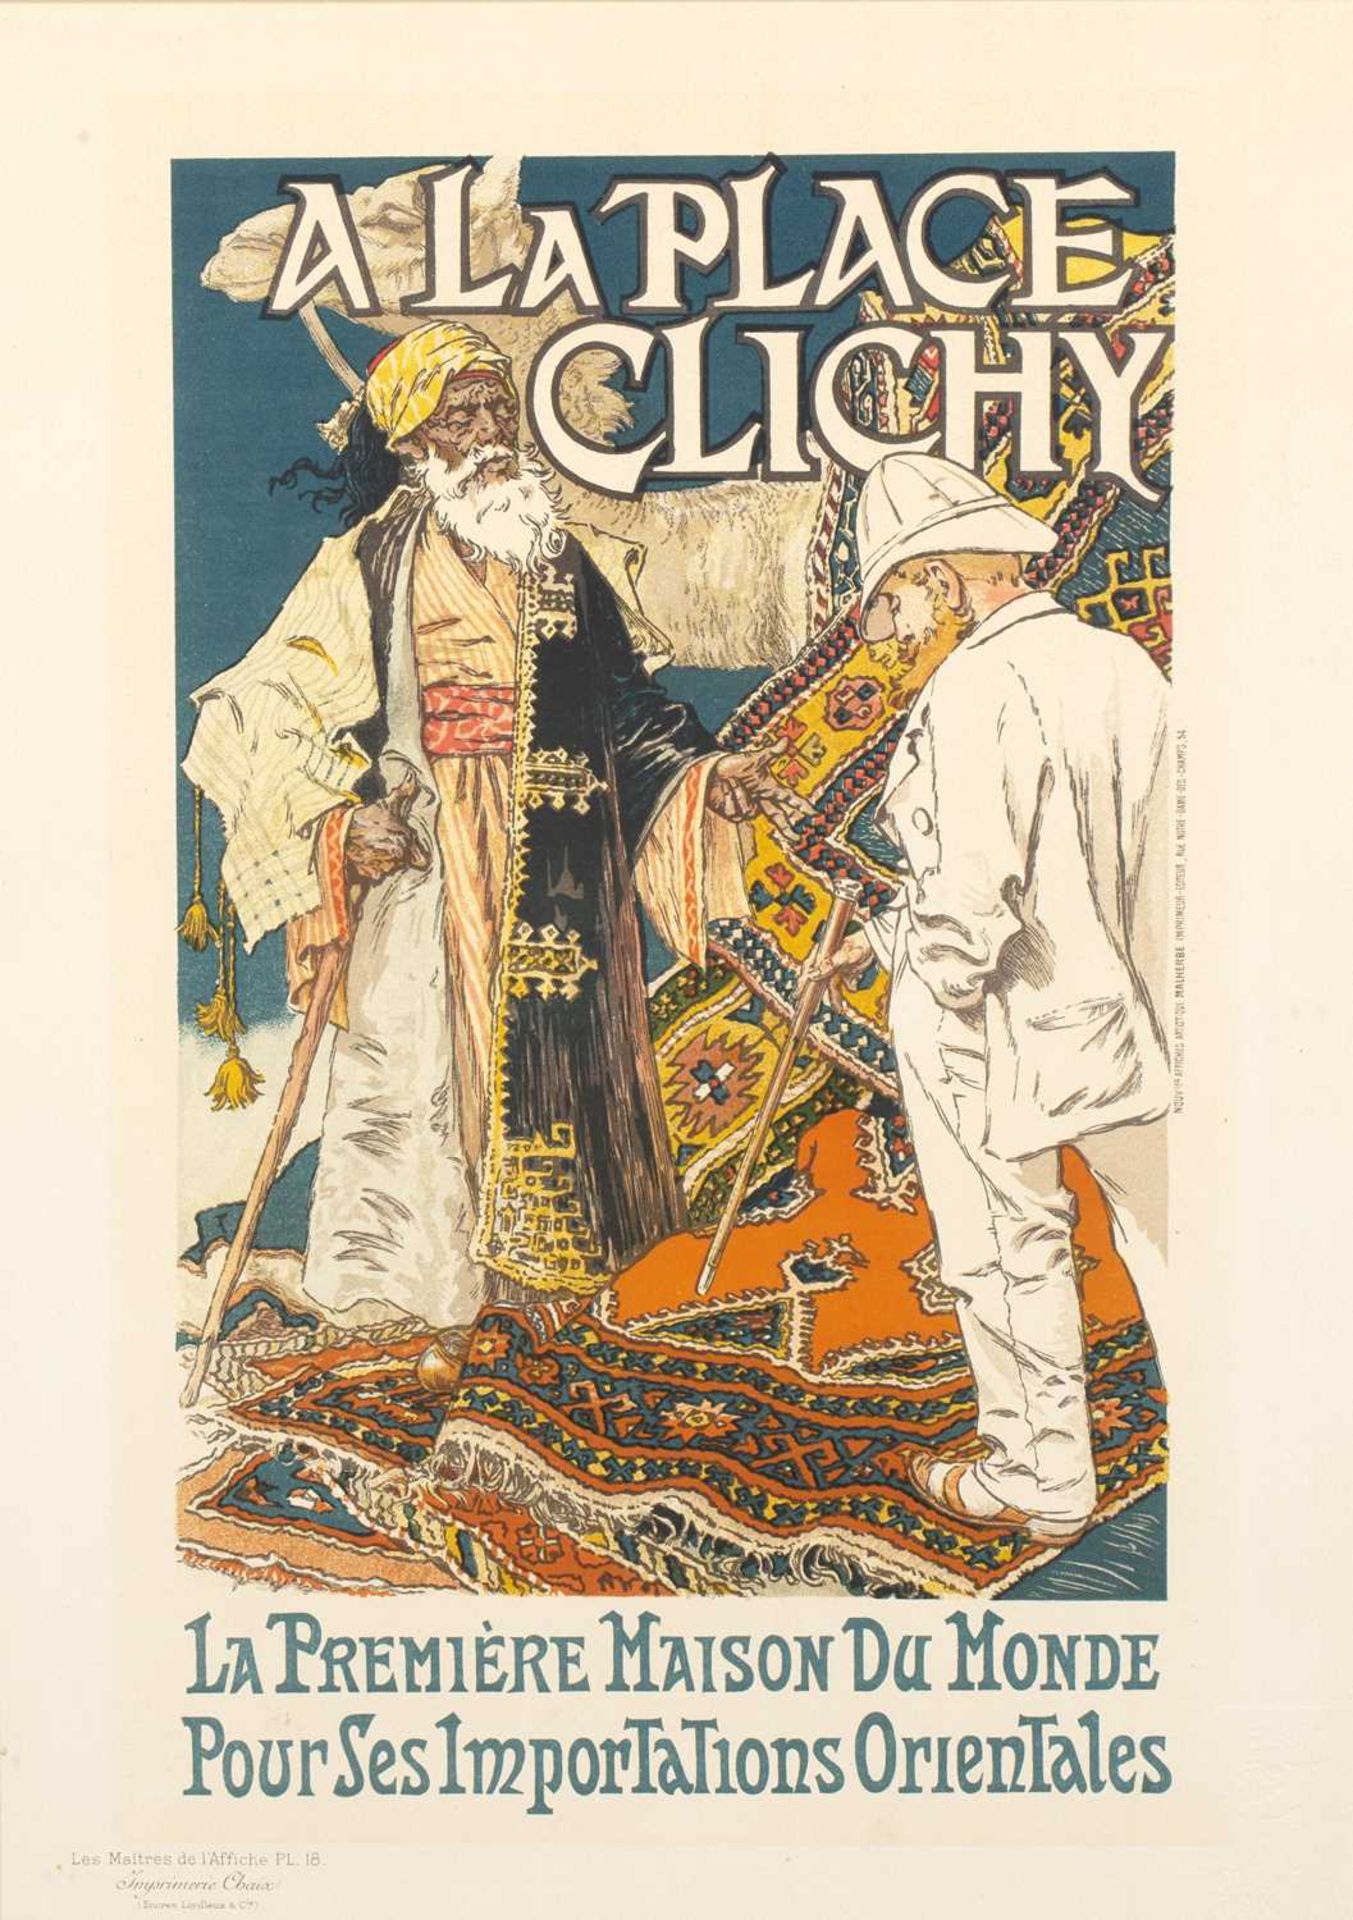 Eugène Samuel Grasset (1841-1917) A La Place Clichy, colour lithograph, printed Nouvelles Affiches